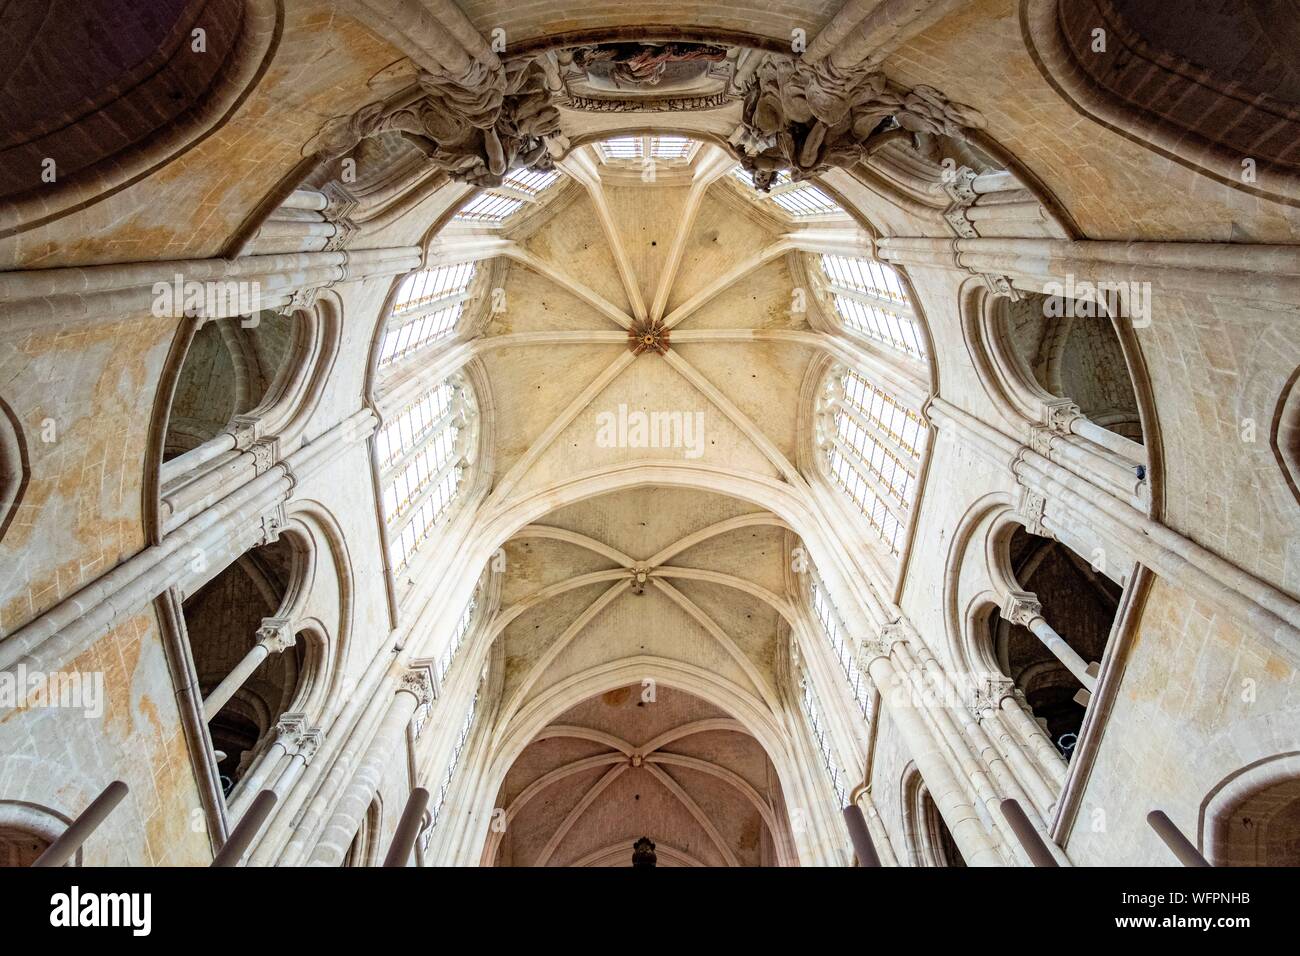 France, Oise, Senlis, la cathédrale Notre-Dame de Senlis, catholique romaine d'architecture gothique Banque D'Images